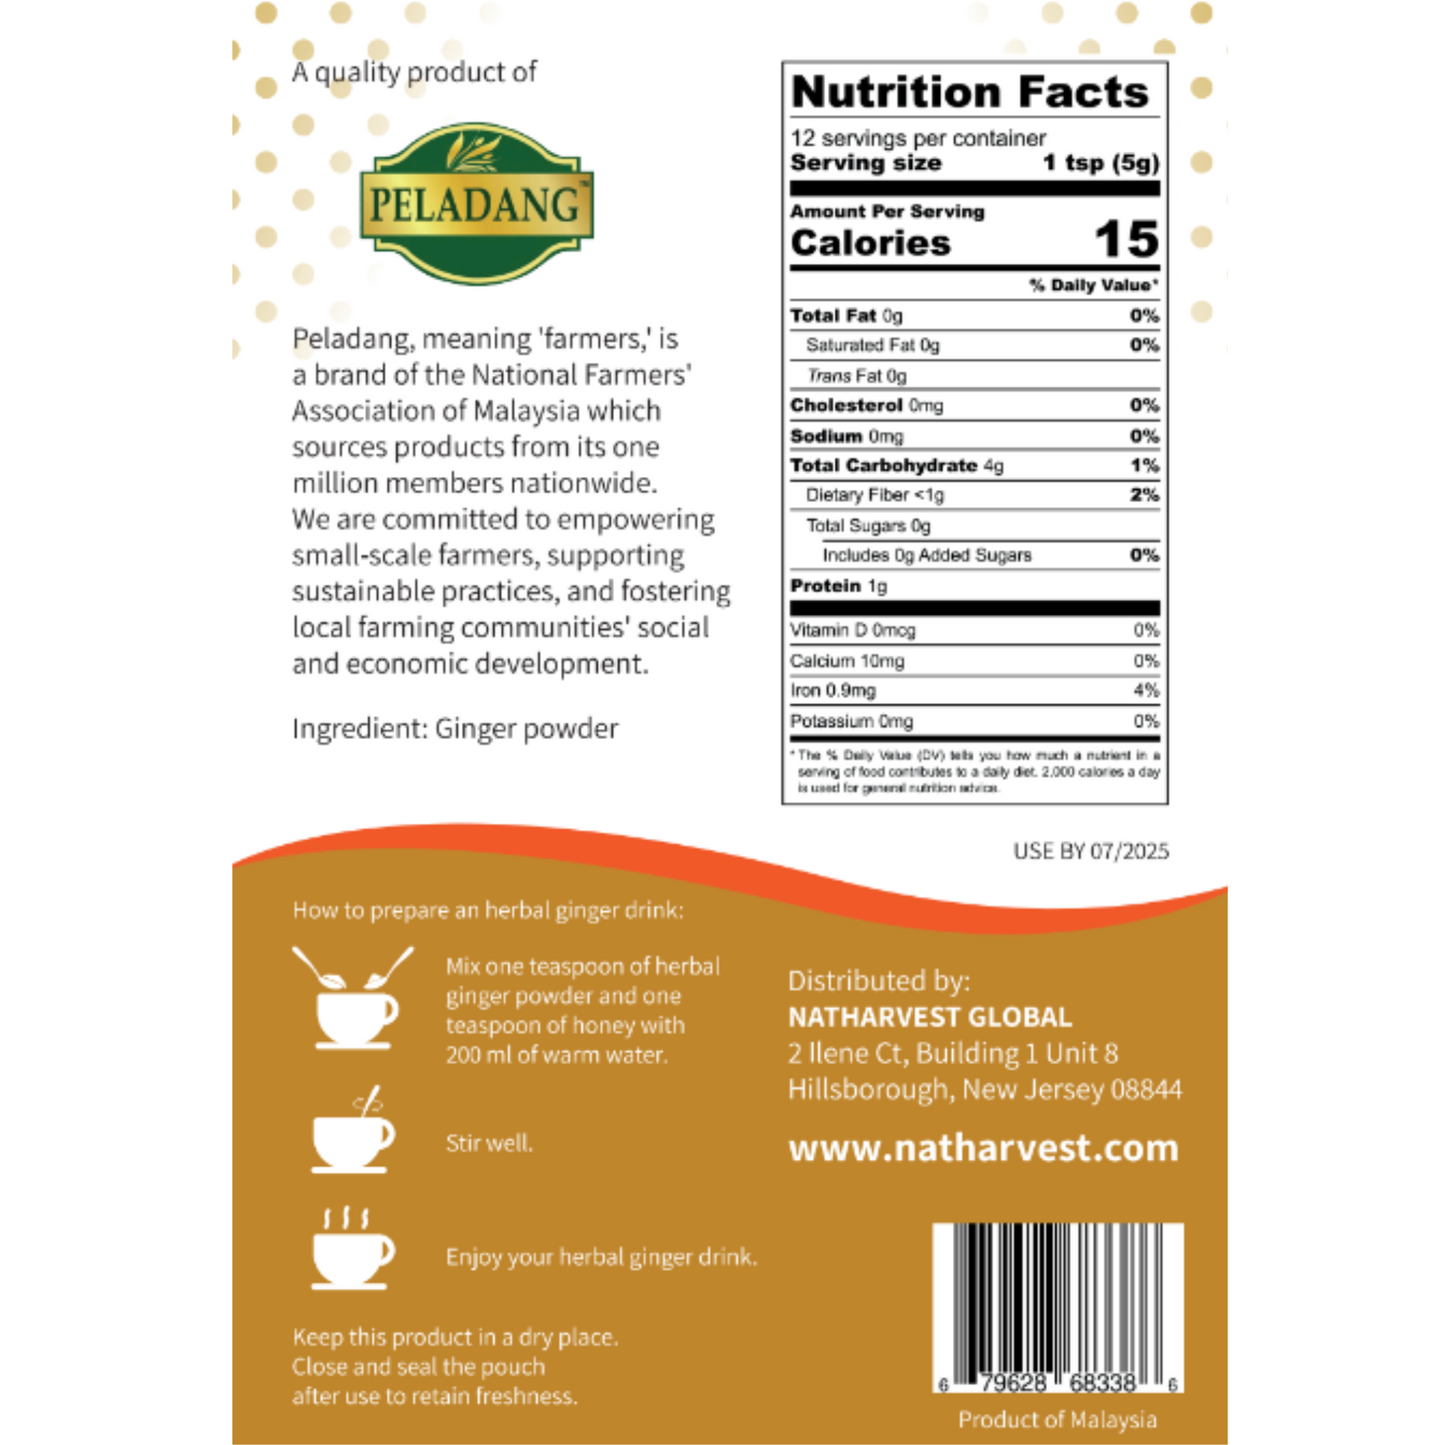 Natharvest Herbal Ginger Powder, 2.1 oz (60 gm)